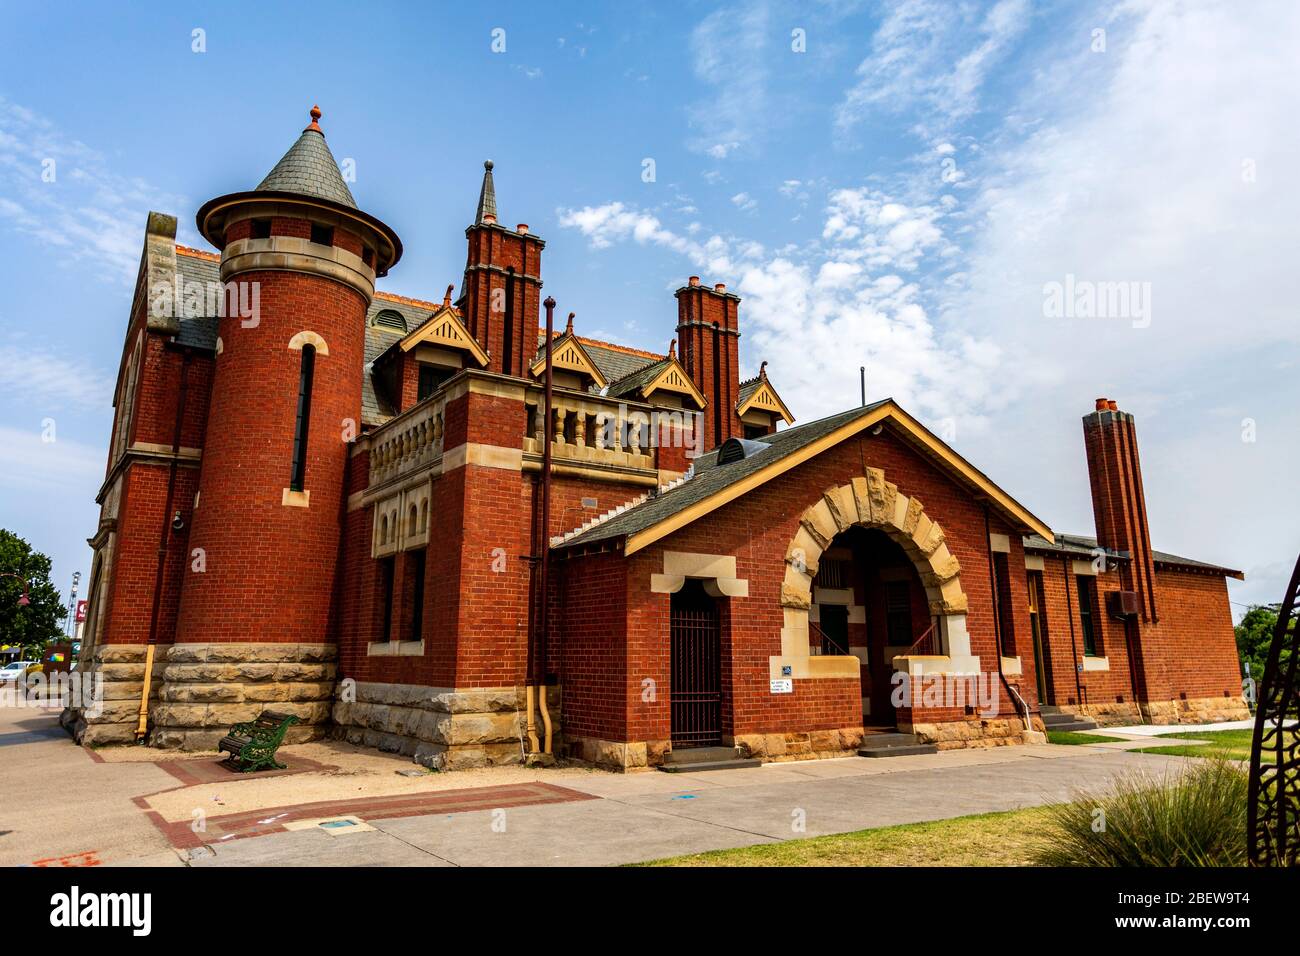 Élévation de l'est et tour de la court House construite en 1893 dans un style roman extravagant de la Fédération, à Bairnsdale, Victoria, Australie Banque D'Images